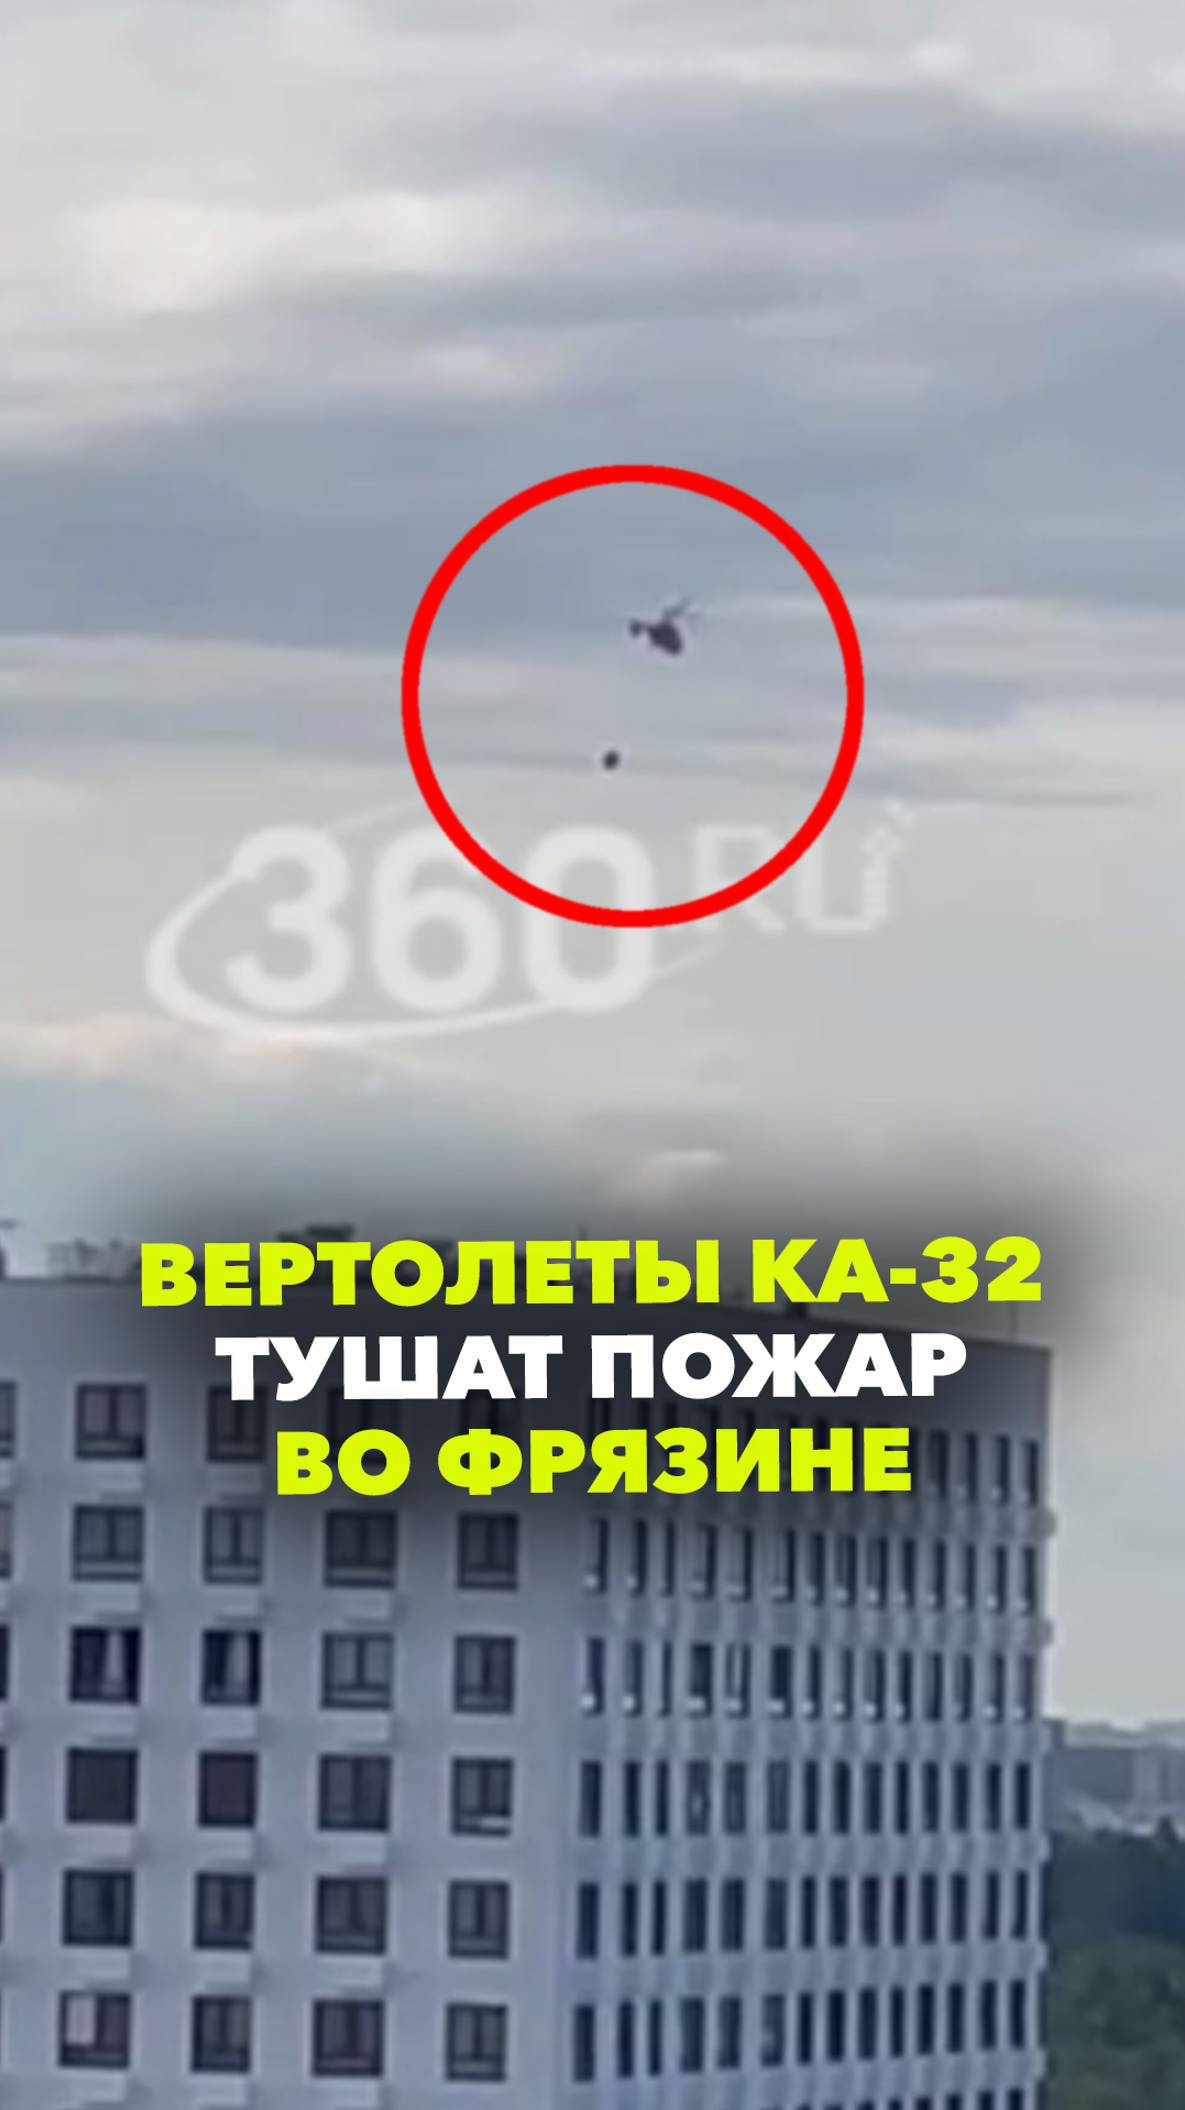 Два вертолета Ка-32 участвуют в тушении пожара во Фрязине. Подписчики делятся кадрами